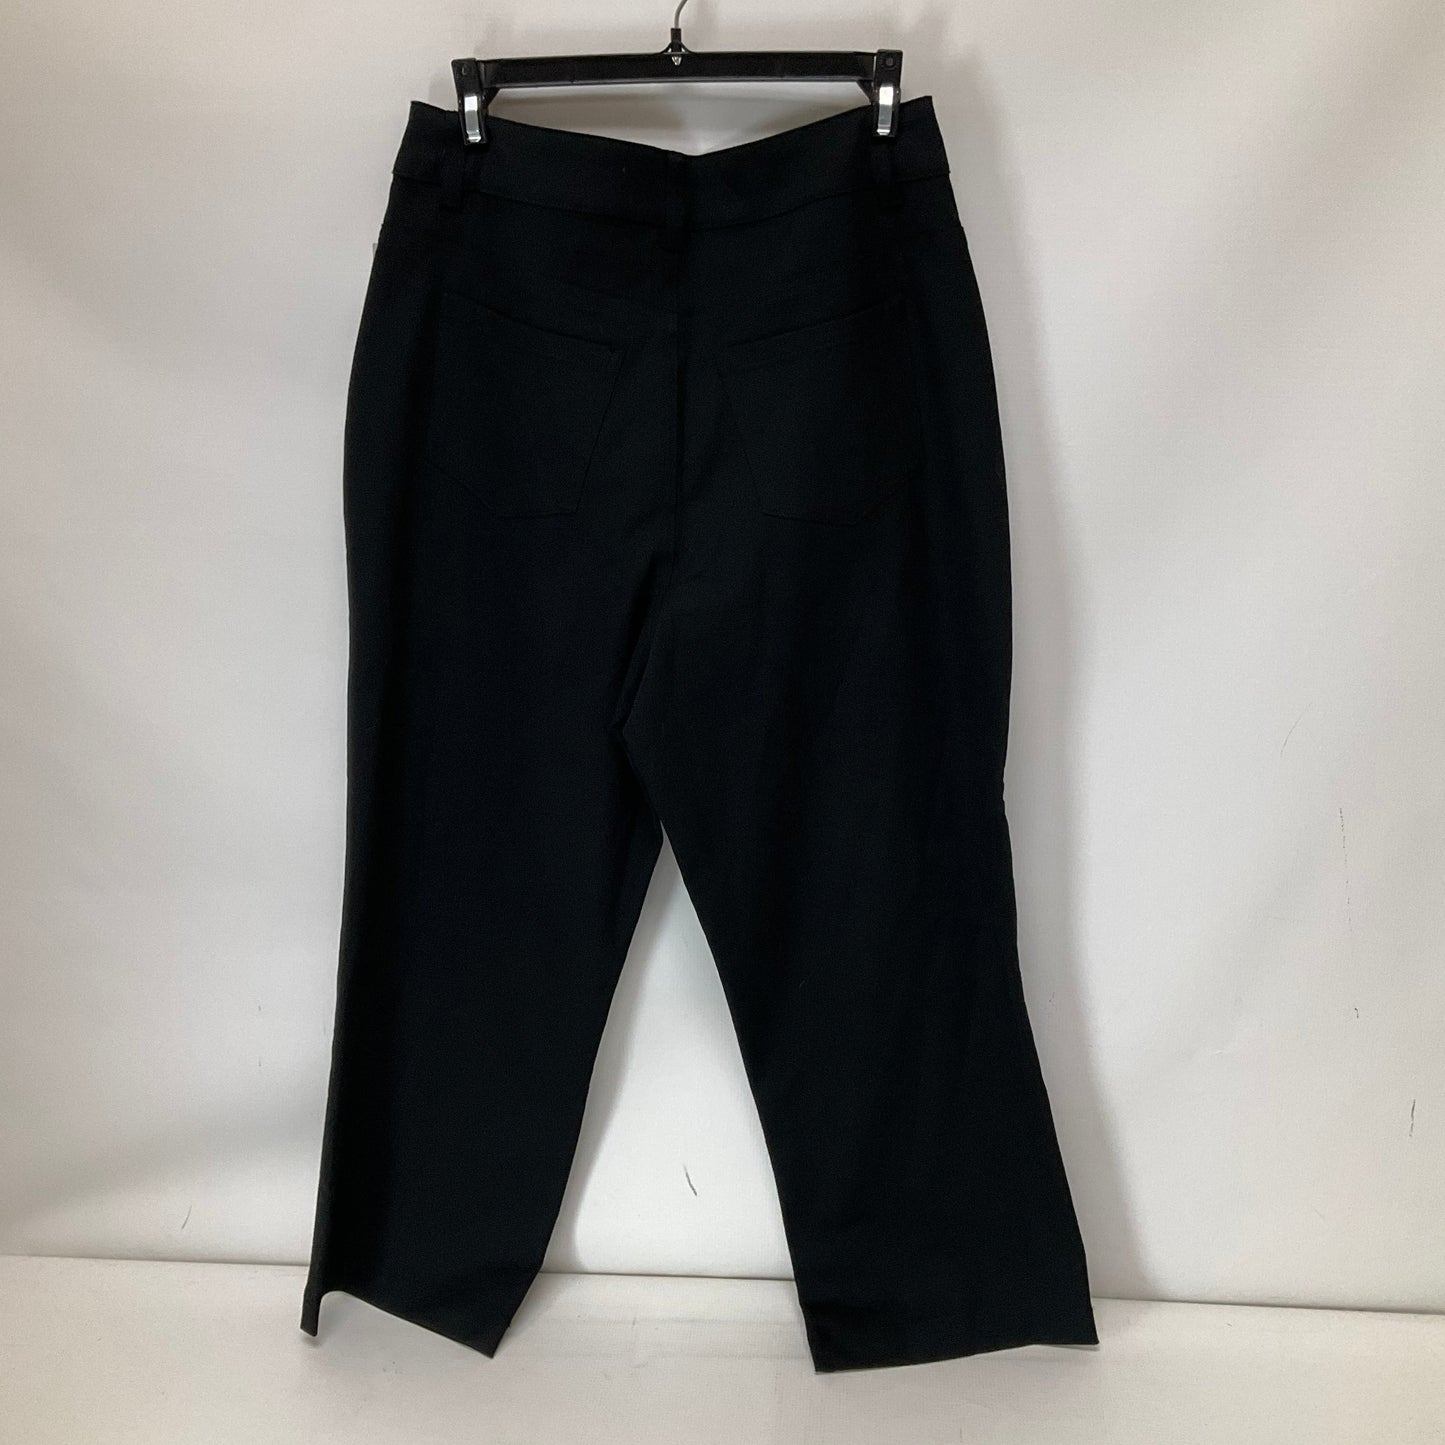 Black Pants Dress Clothes Mentor, Size 6